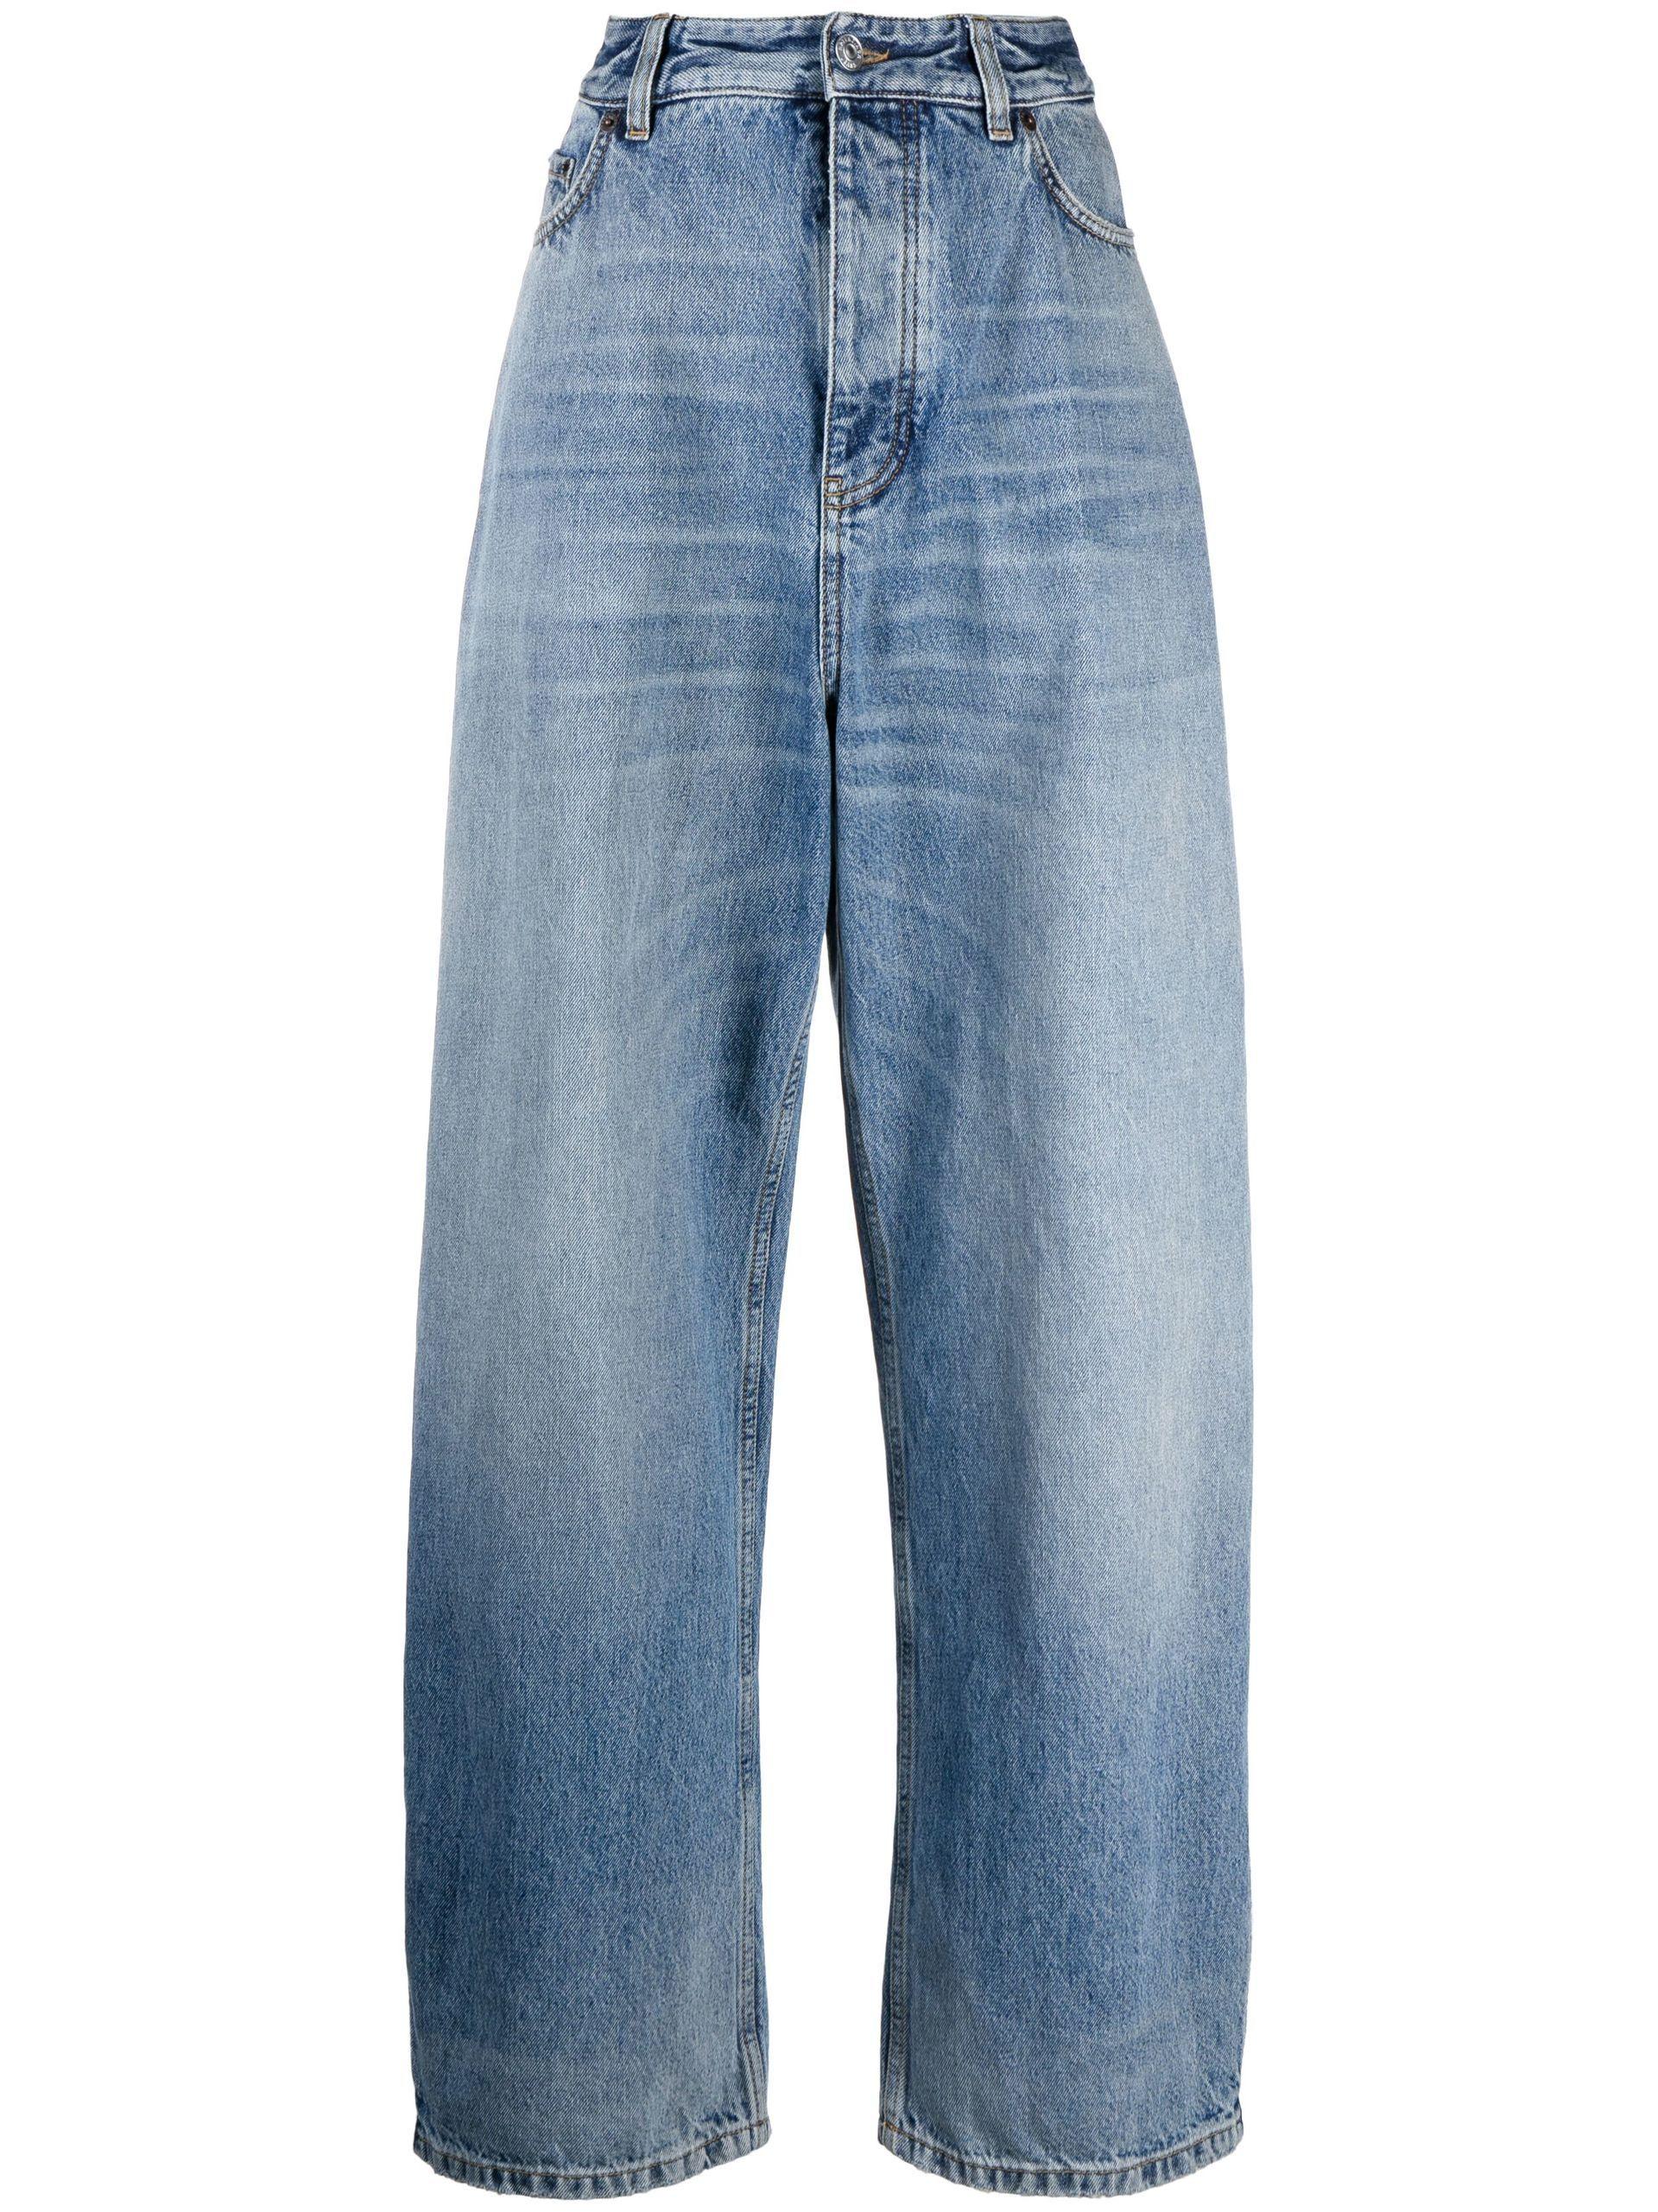 Balenciaga X Adidas Wide-leg Jeans in Blue | Lyst UK